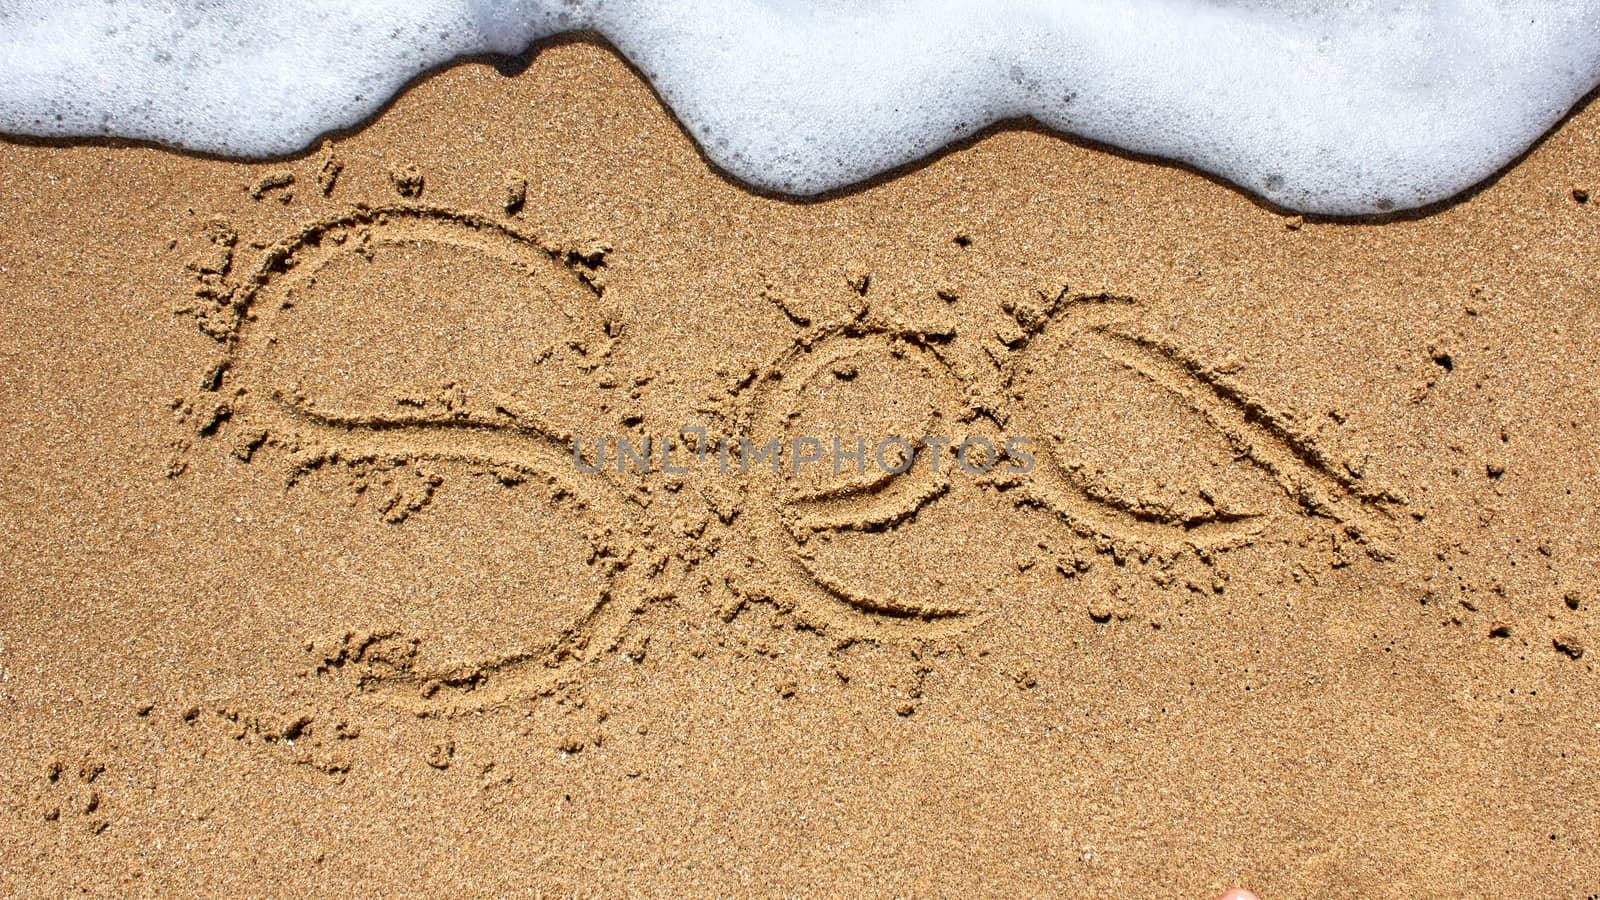 Sea word written on the beach sand.